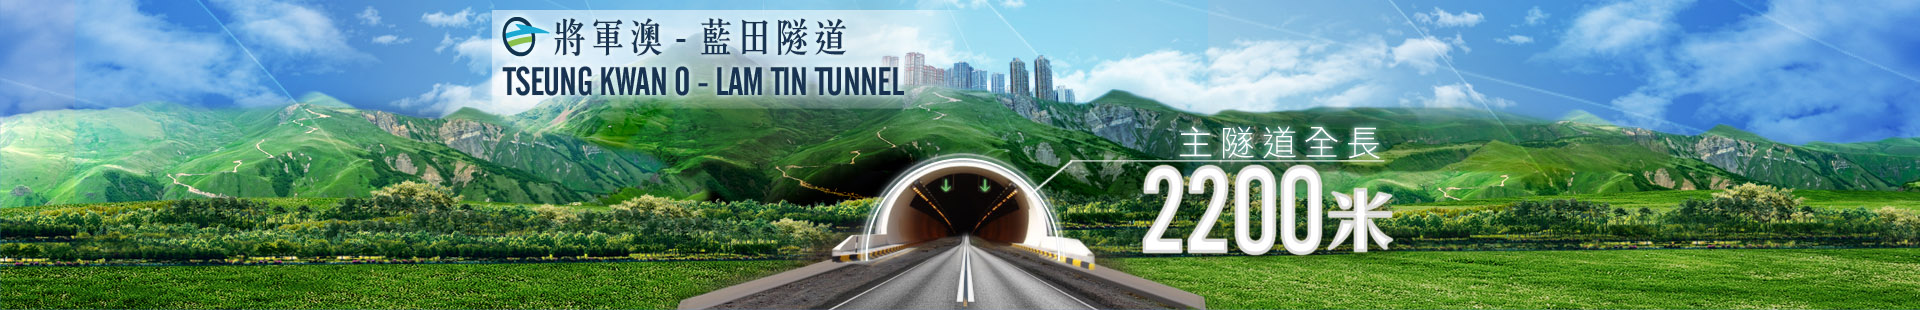 隧道全長2200米